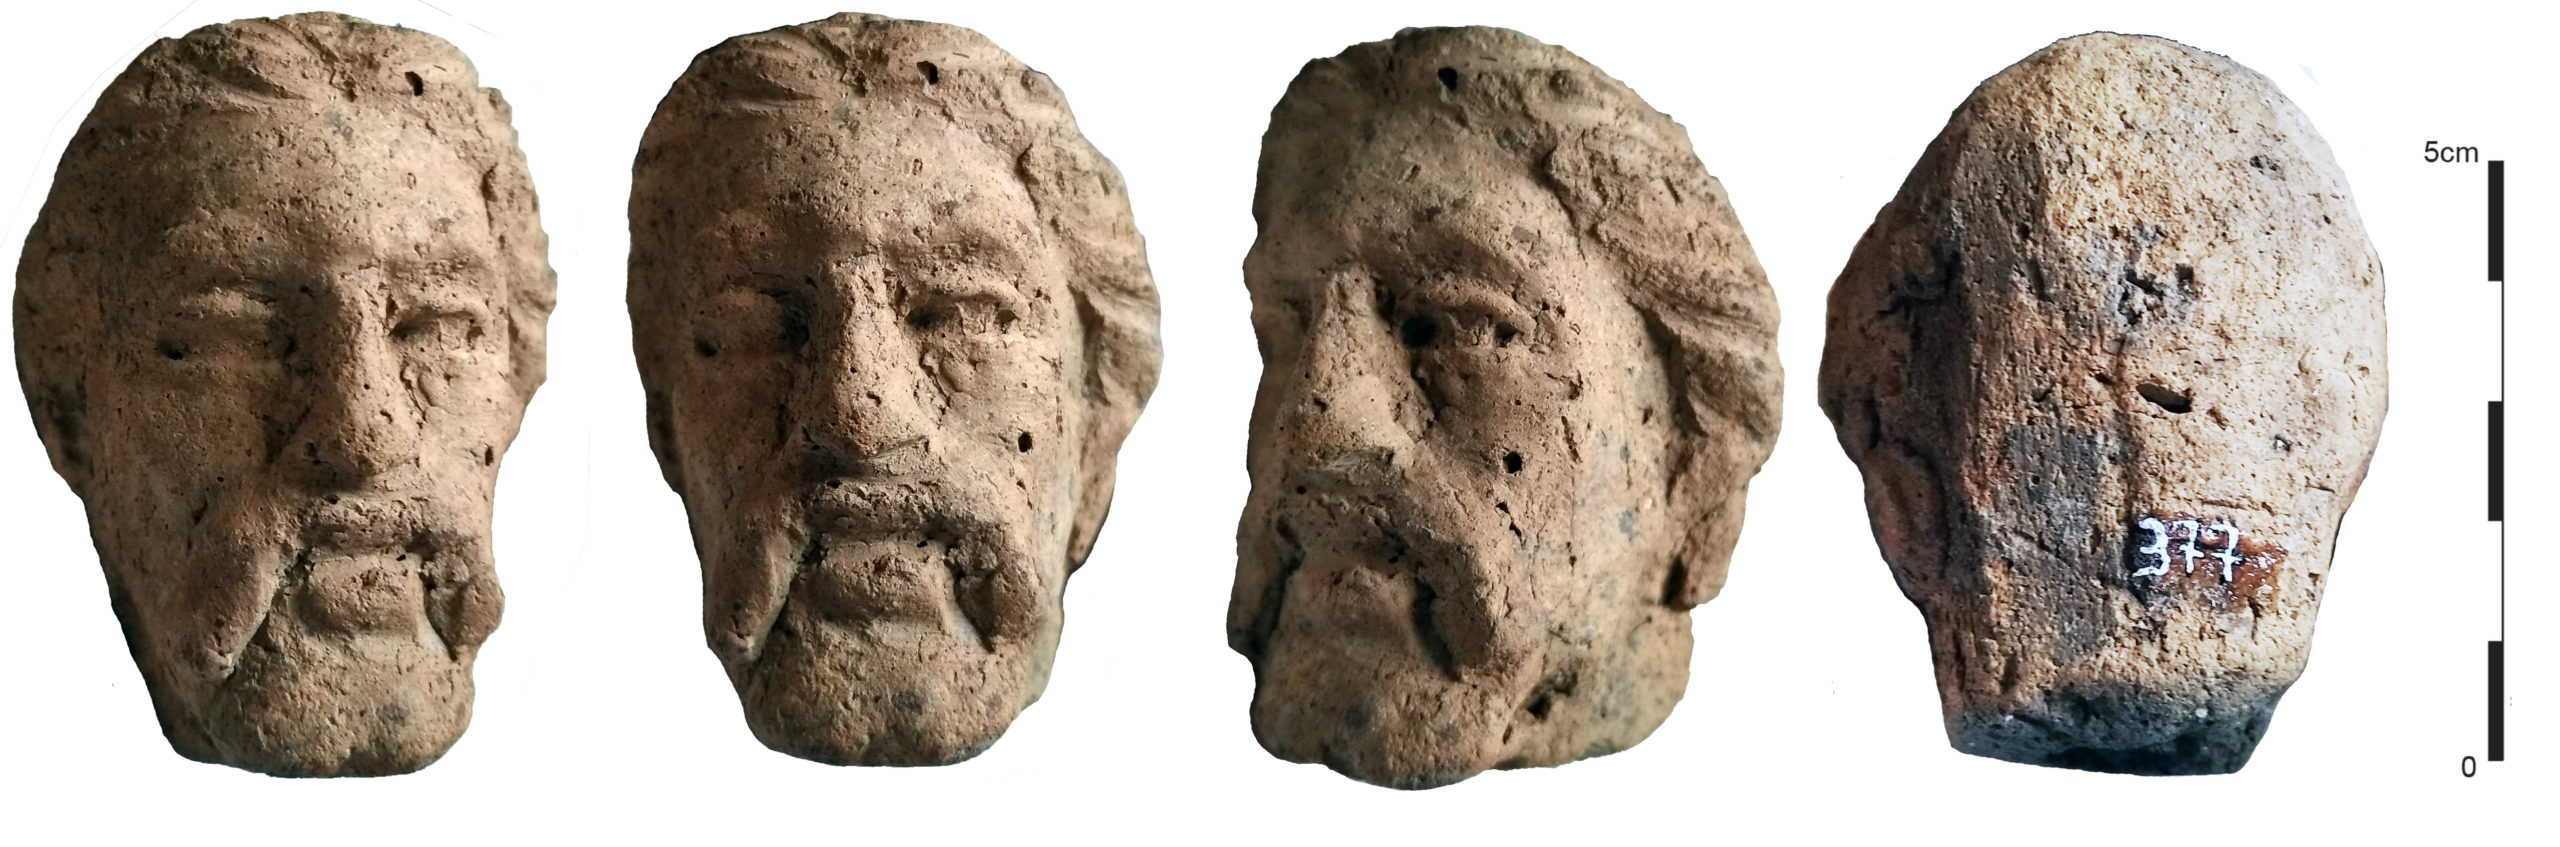 tête de Galate avec des moustaches proéminentes, issue d’une figurine en terre cuite trouvée en Égypte (conservée au musée de Limoges)